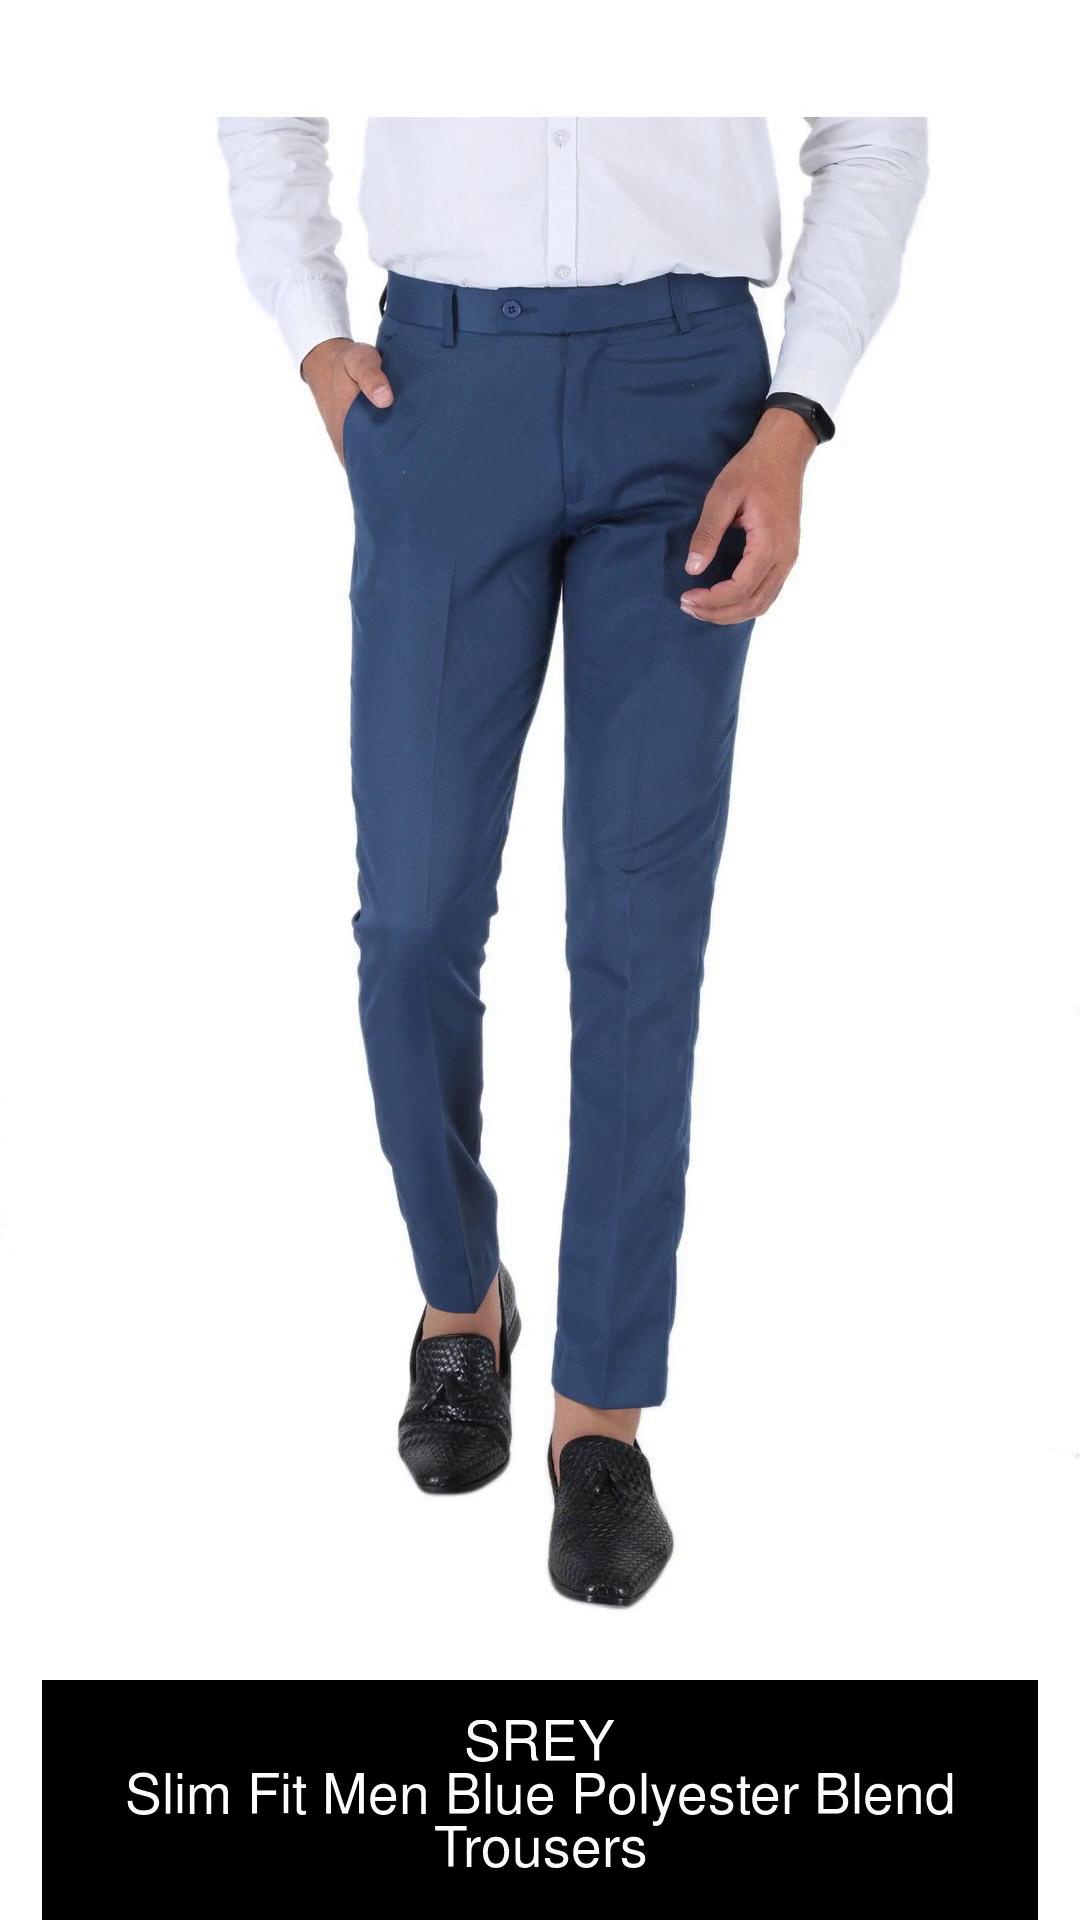 SREY Regular Fit Men Black Trousers  Buy SREY Regular Fit Men Black  Trousers Online at Best Prices in India  Flipkartcom